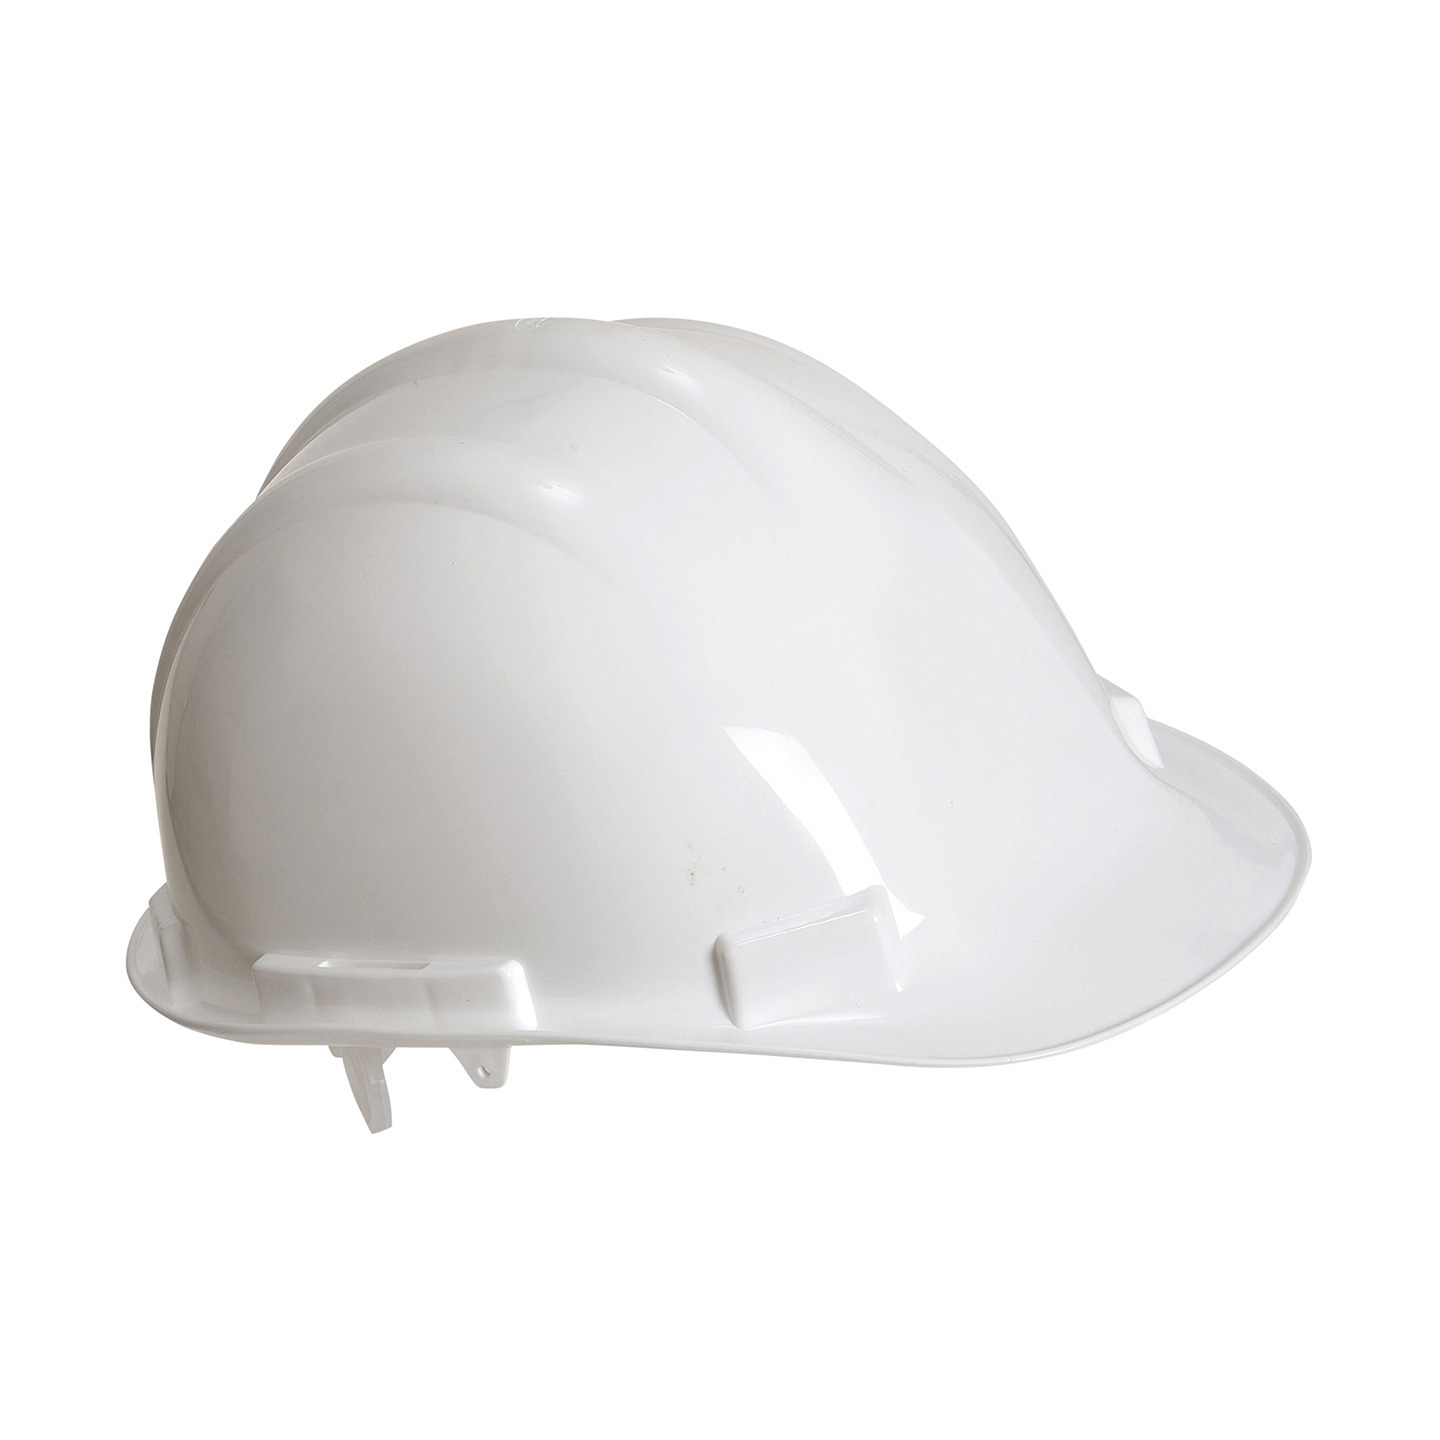 Set van 3x stuks veiligheidshelmen-bouwhelmen hoofdbescherming wit verstelbaar 55-62 cm